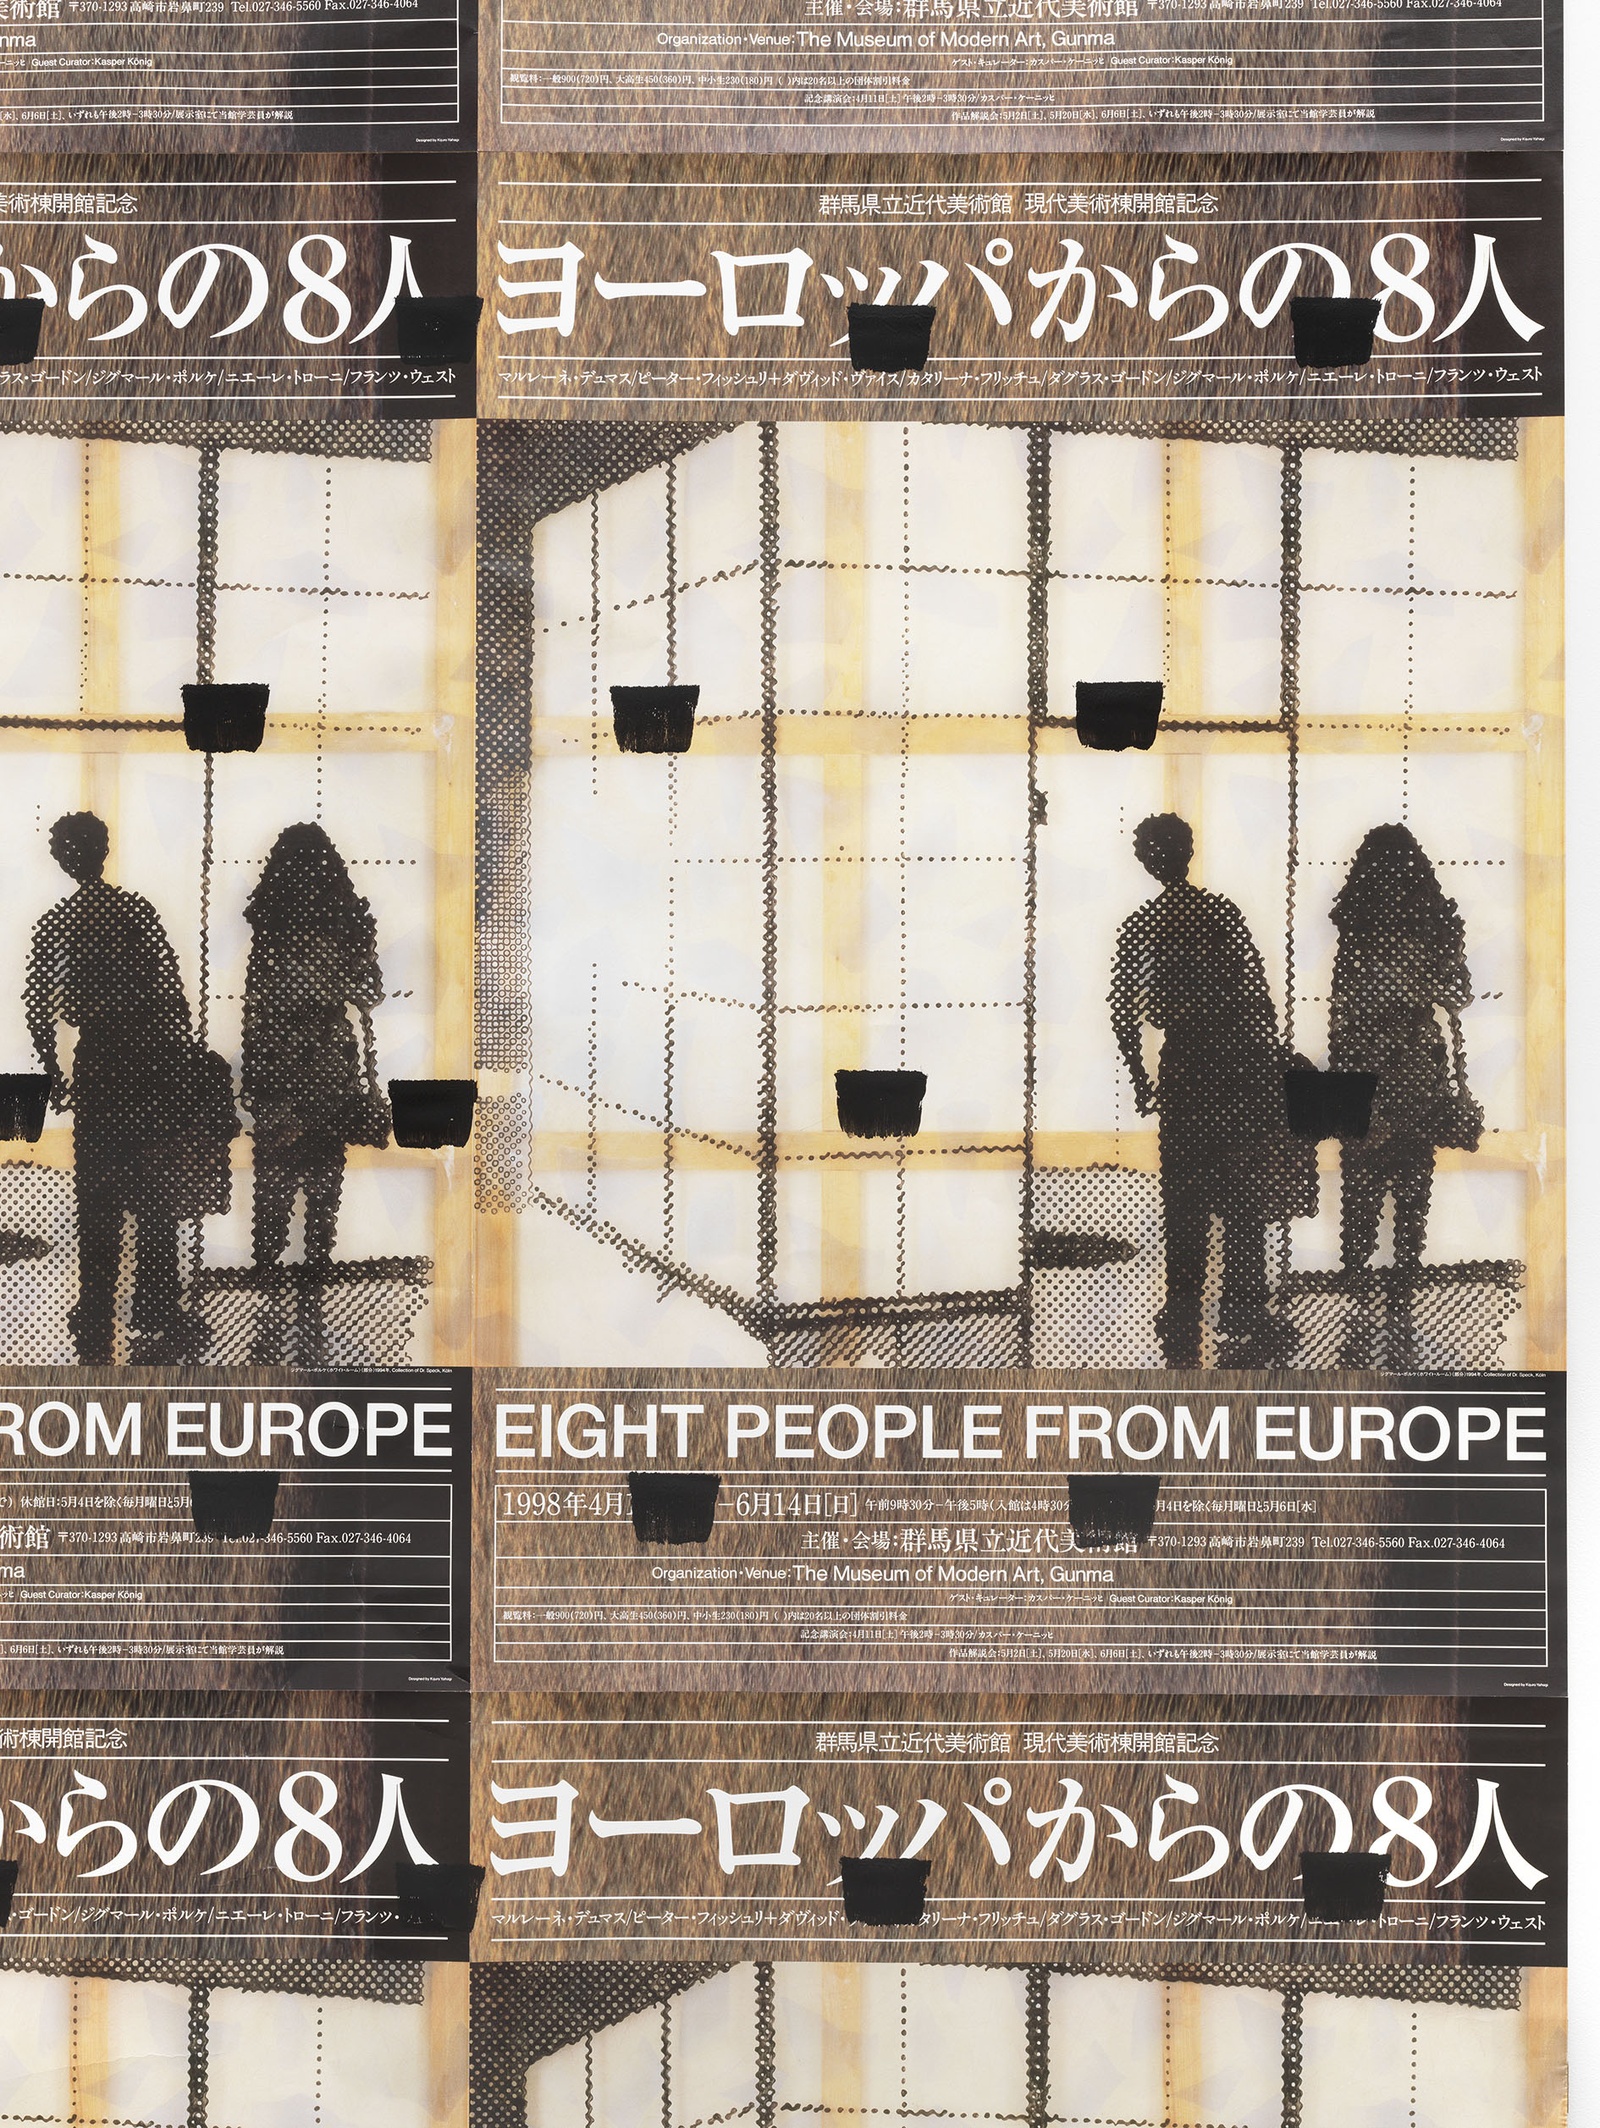 Niele ToroniAbdrücke eines Pinsels Nr. 50, wiederholt in regelmäßigen Abständen von 30 cm (Eight People from Europe), 1998 (detail)